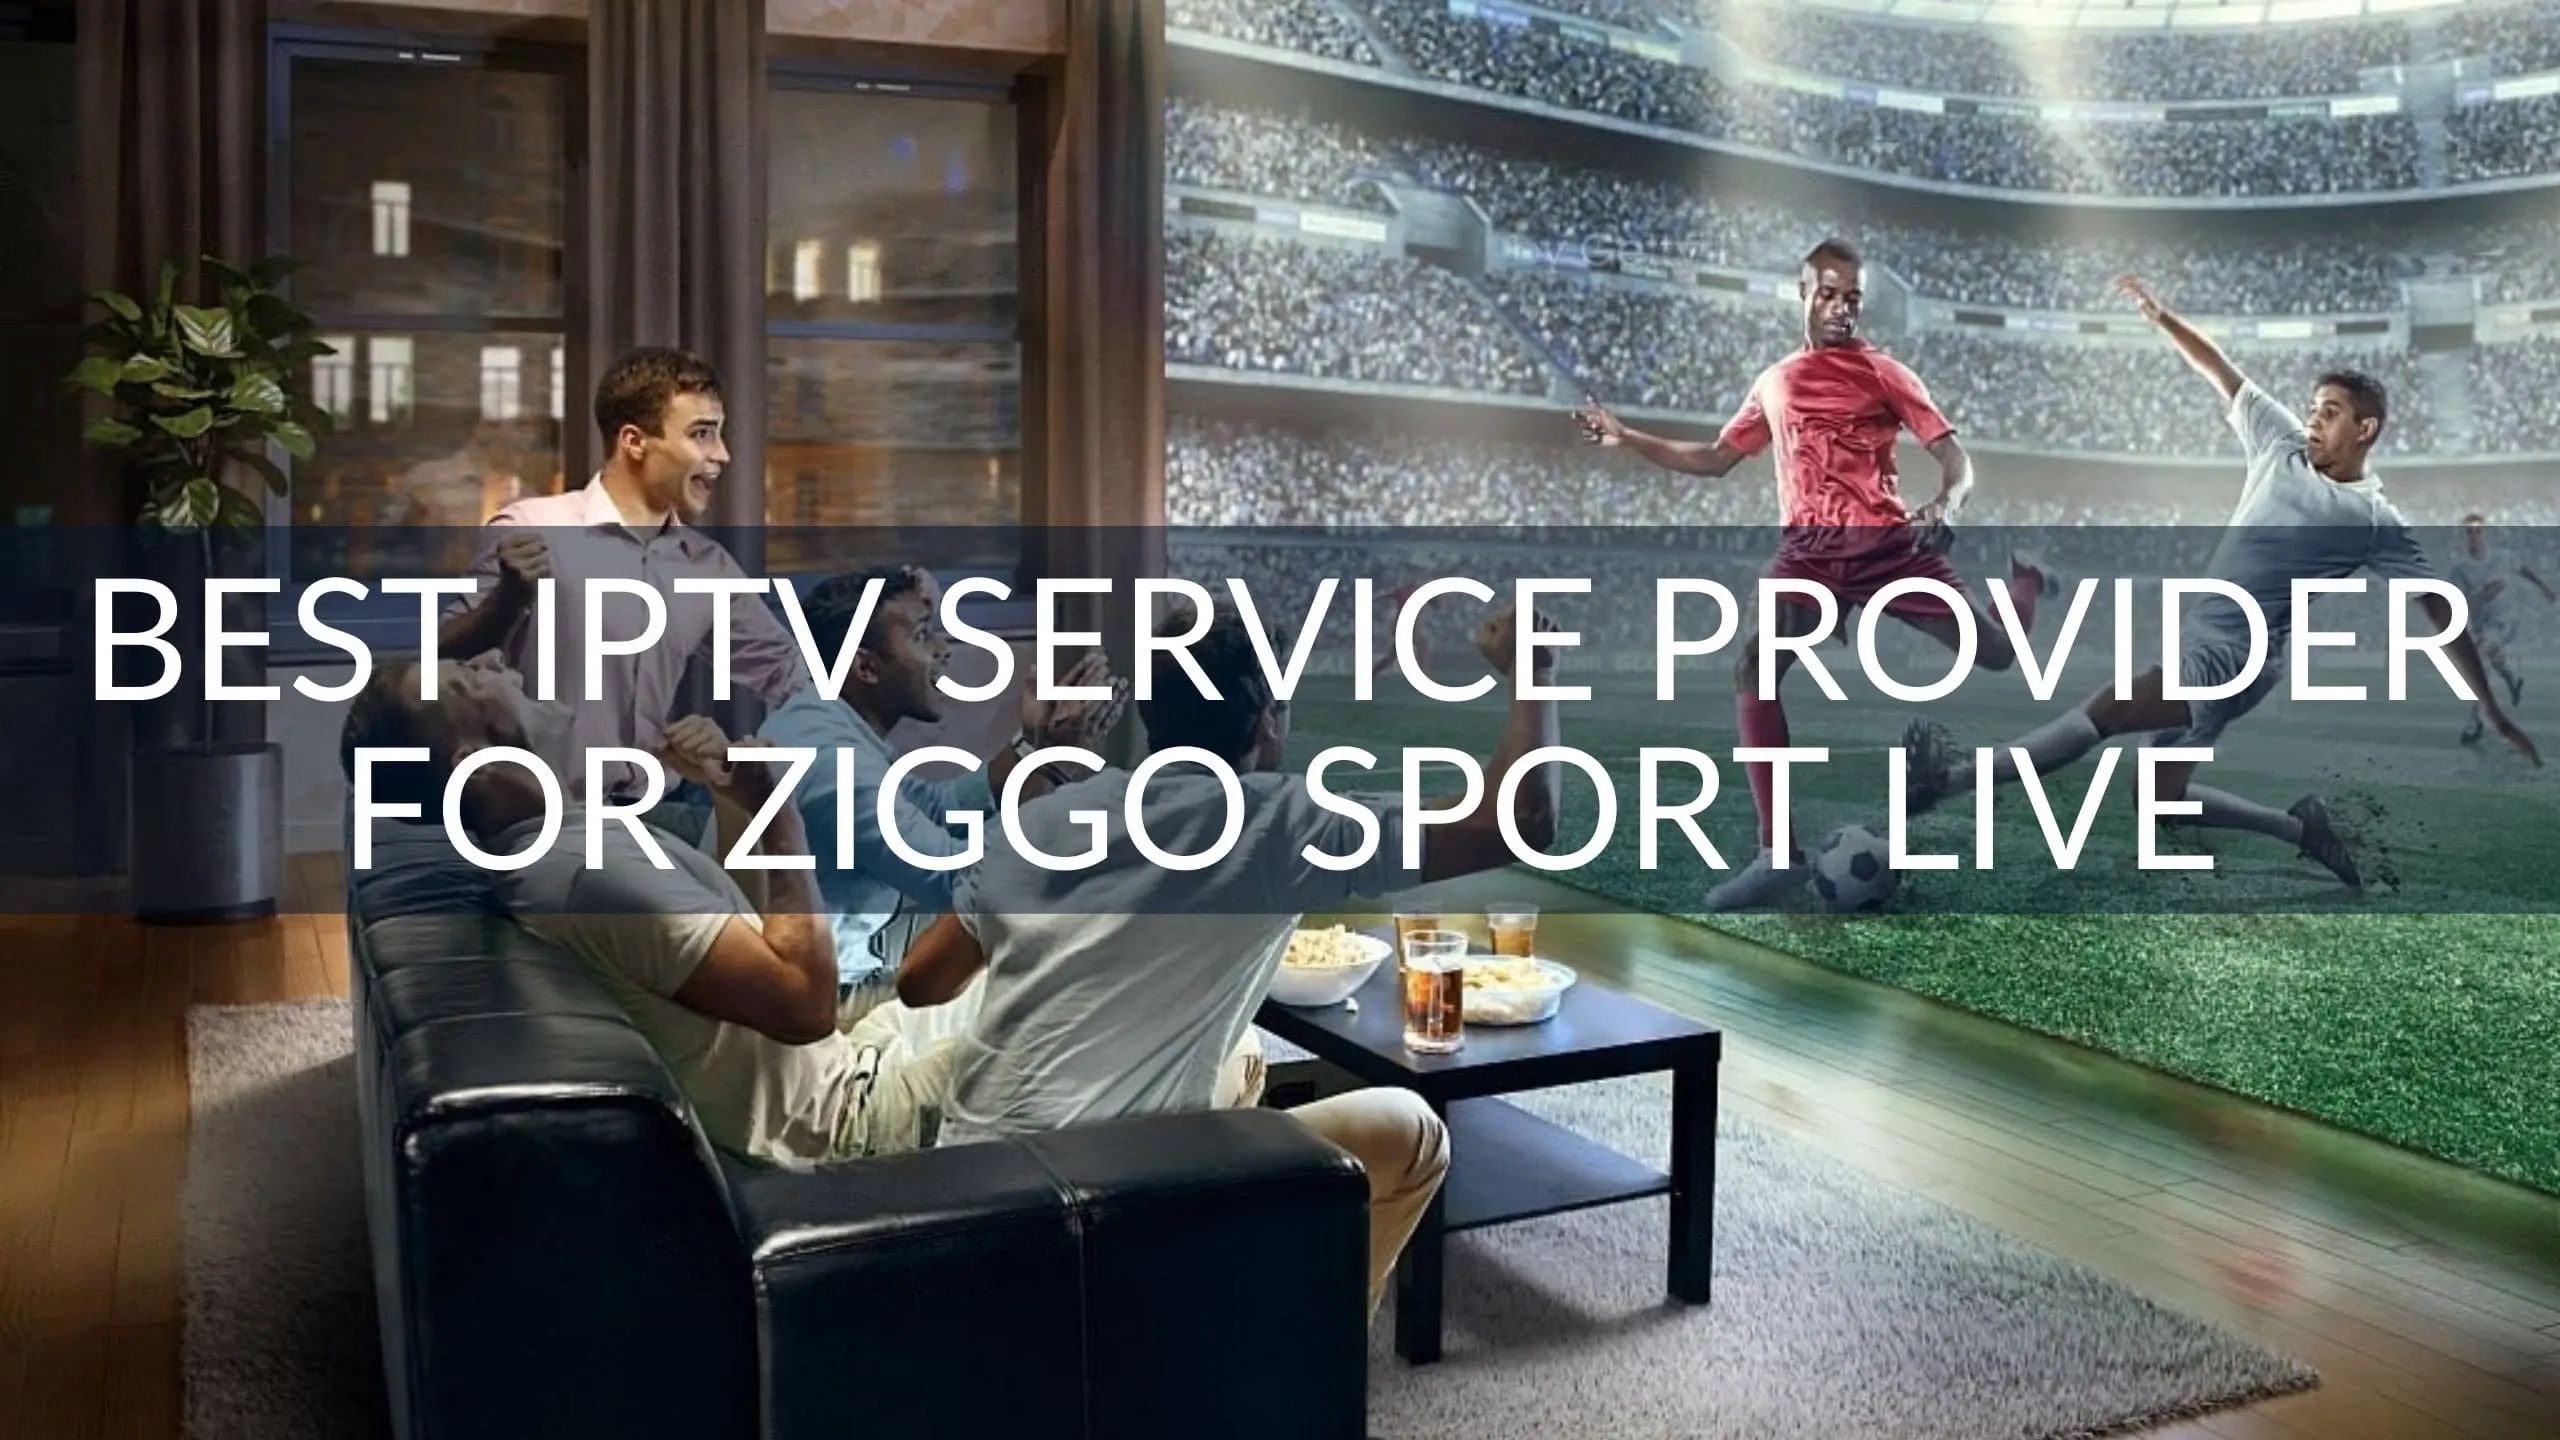 Best IPTV Service Provider for Ziggo Sport Live